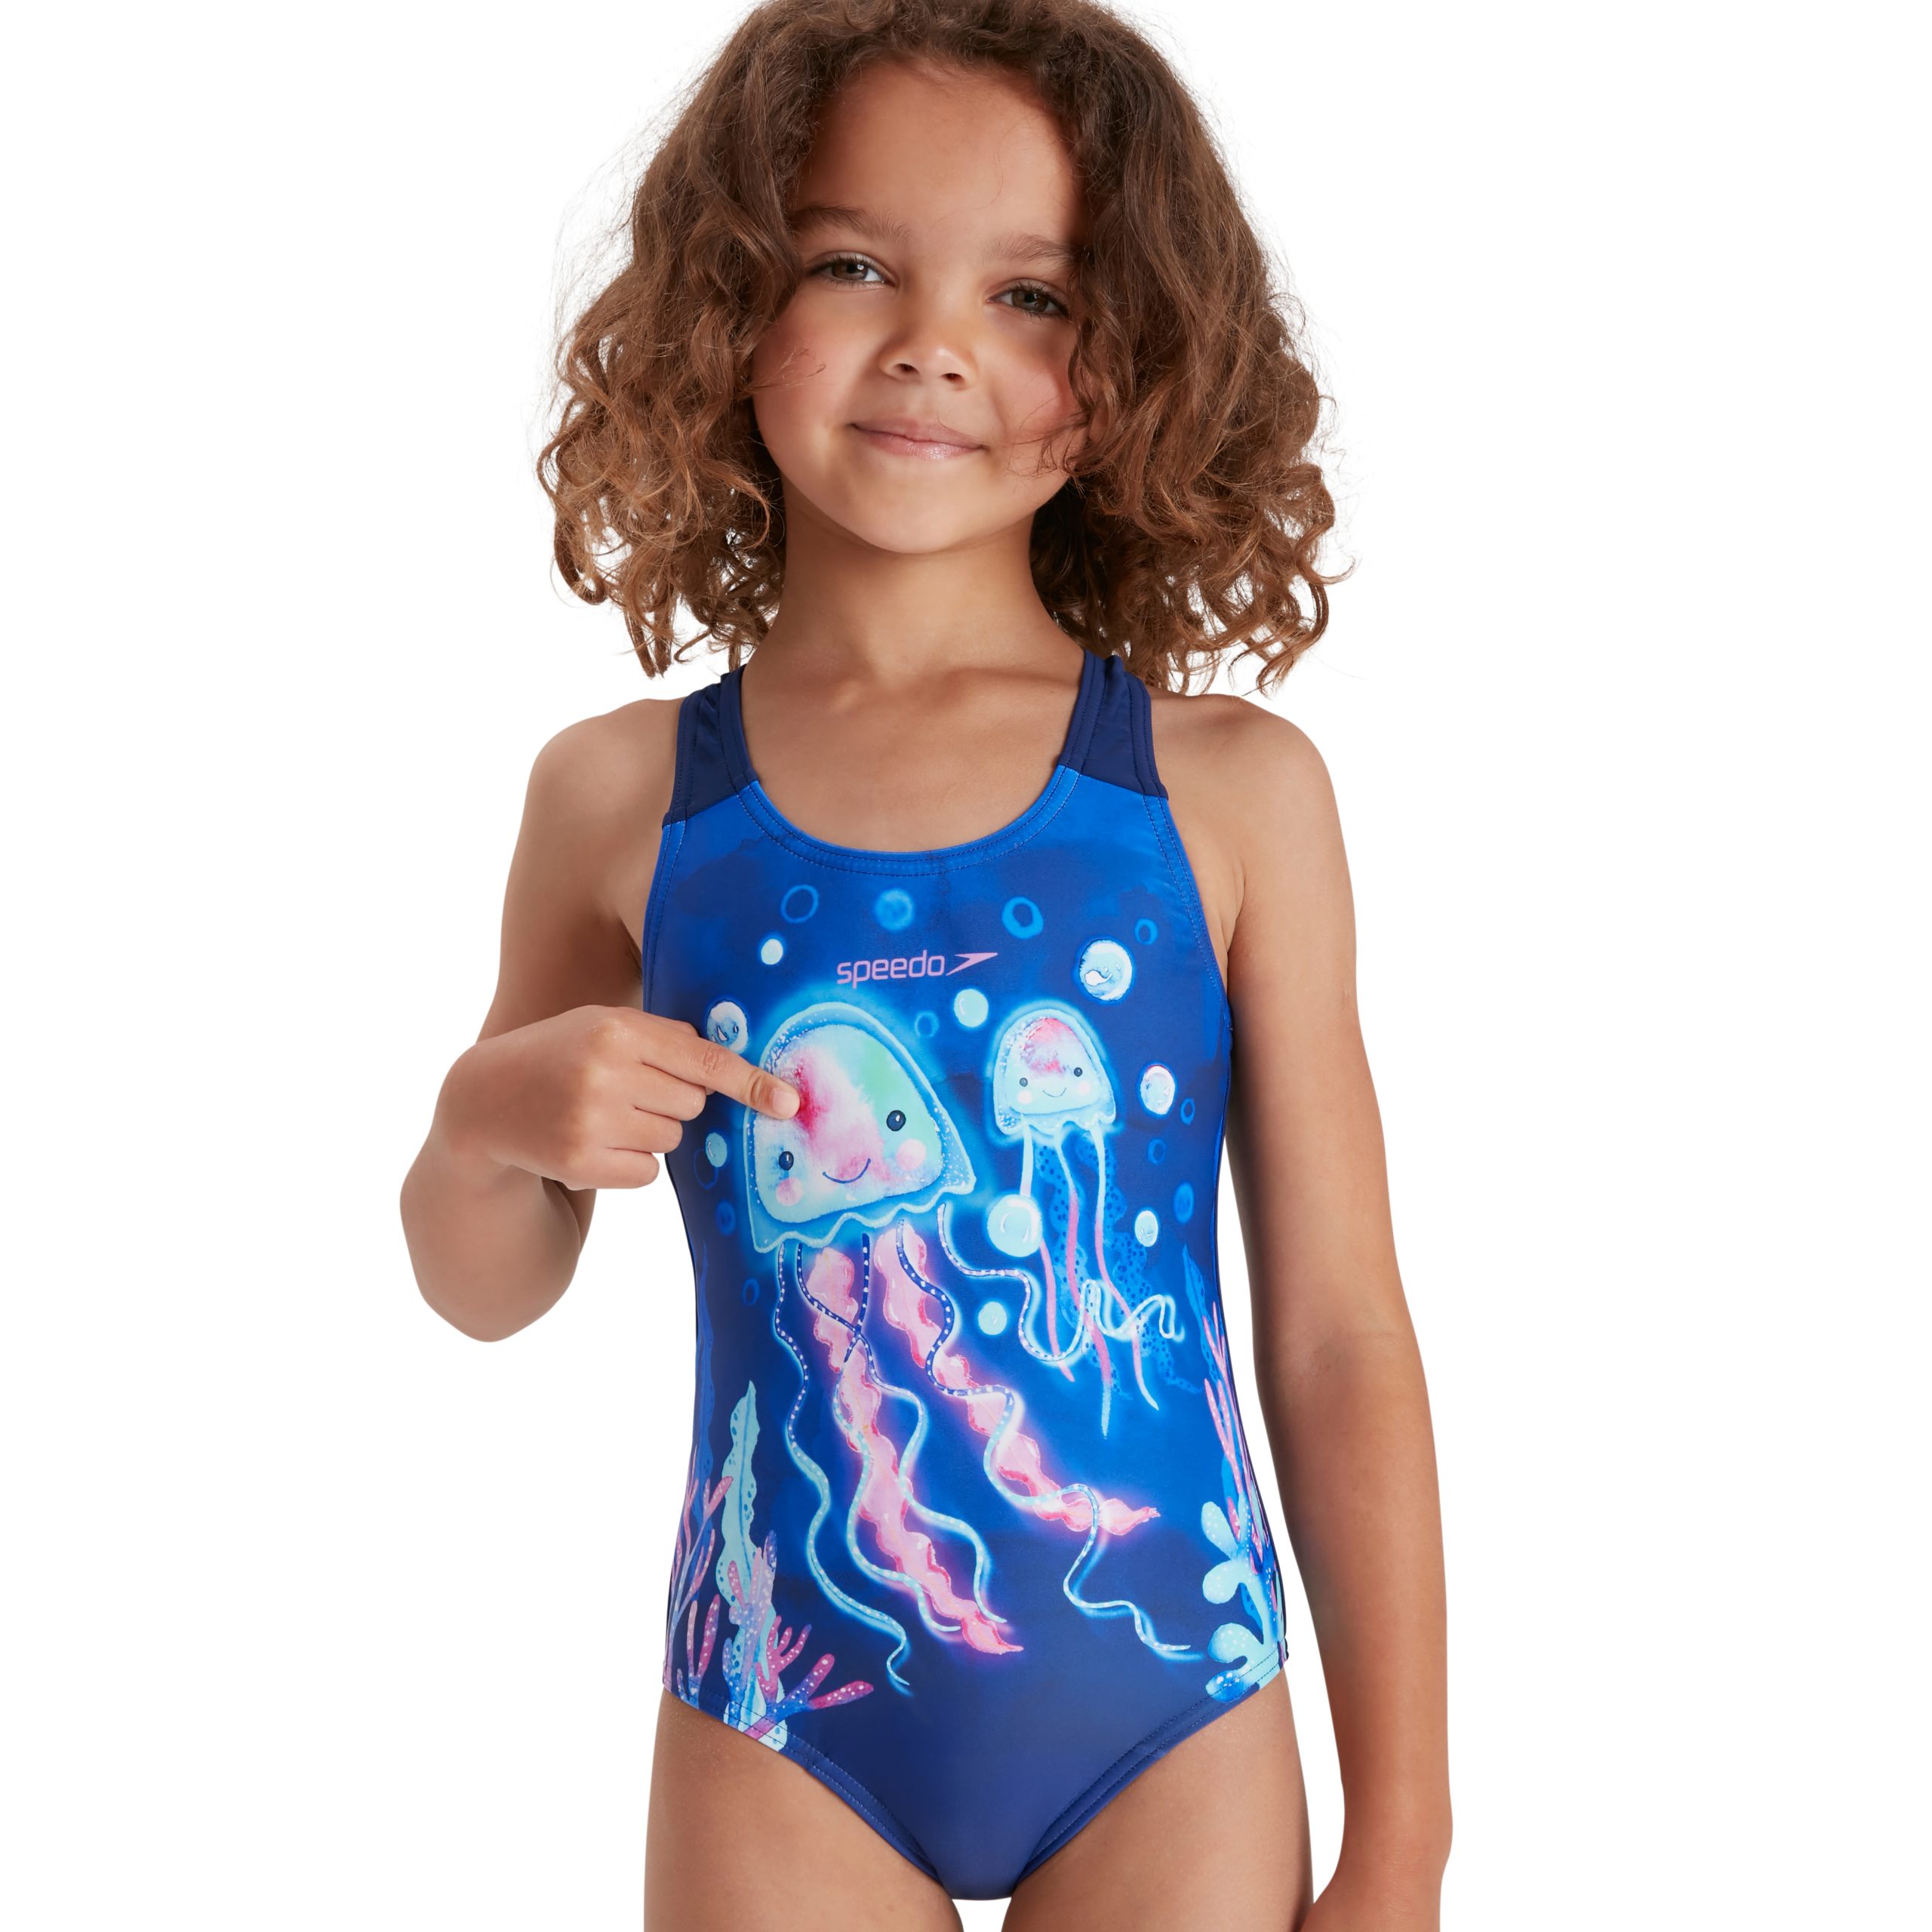 premier bungeejumpen reptielen Speedo Girls Tots Swimsuits – Sportmax : Leisure Centre Retail Solutions: Speedo  Swimwear and Accessories Supplier